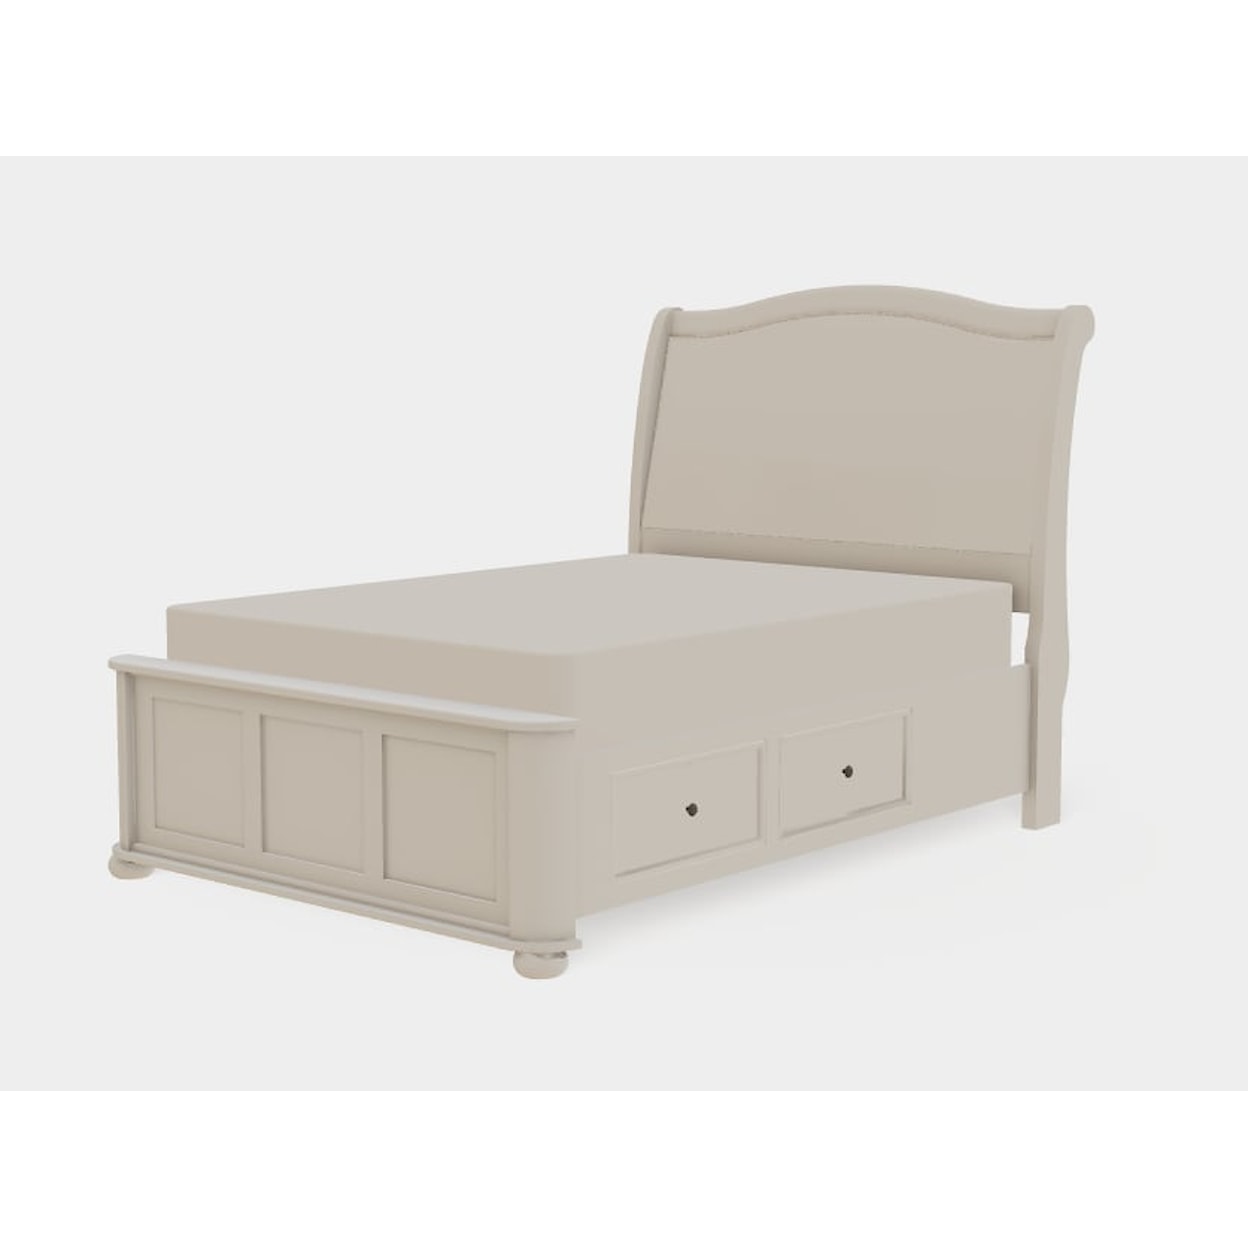 Mavin Kingsport Full Upholstered Bed Both Drawerside